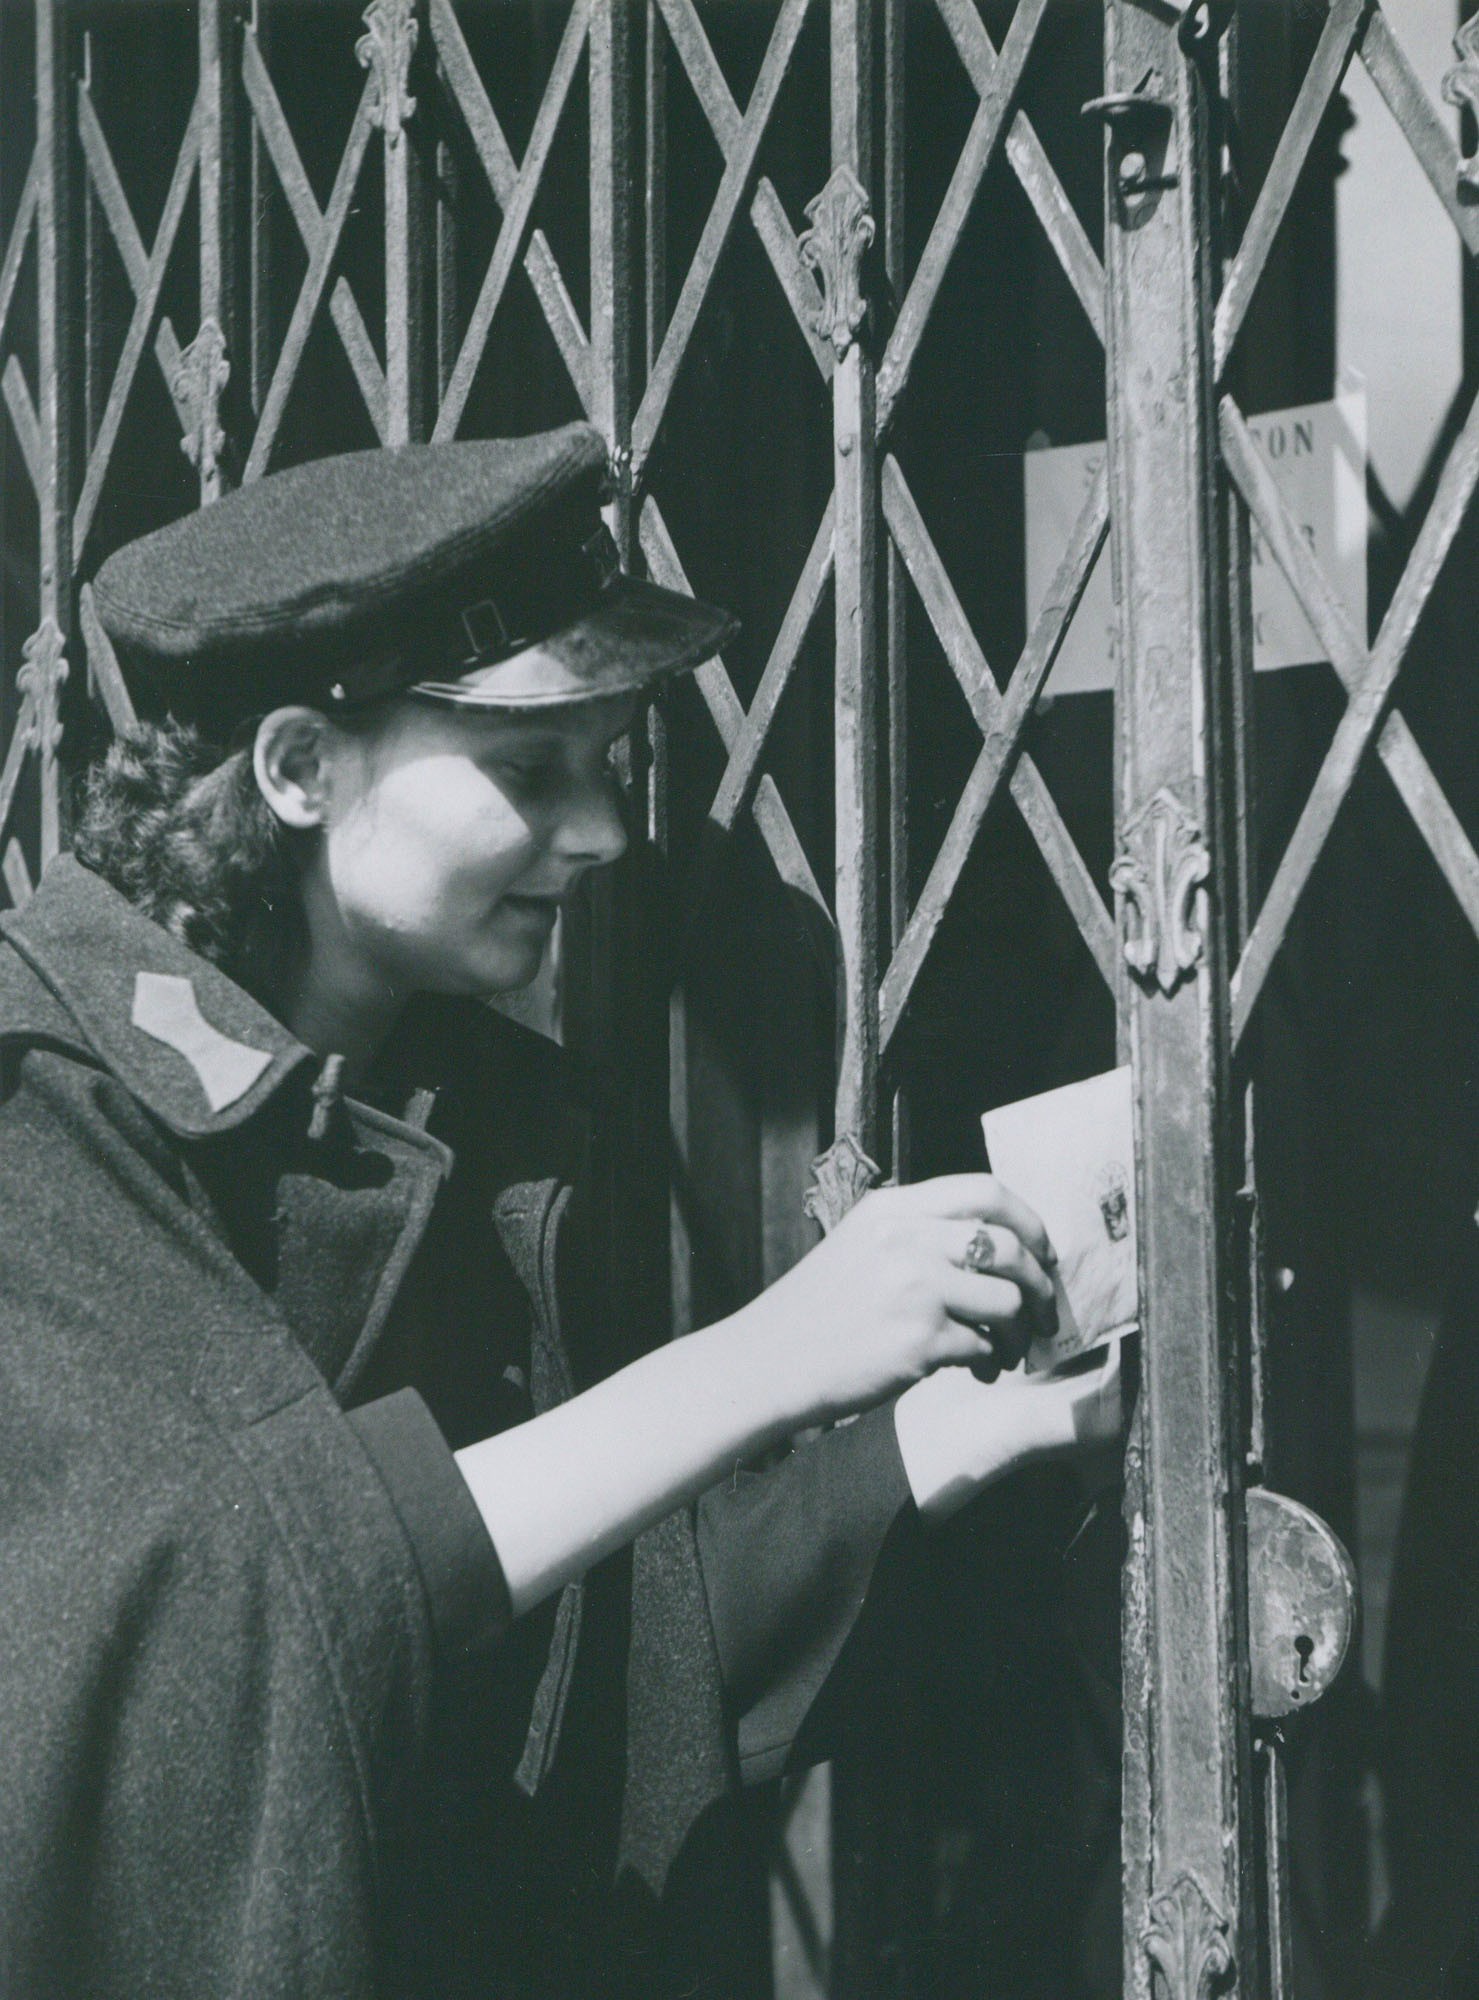 Postai kézbesítők munkában (Postamúzeum CC BY-NC-SA)